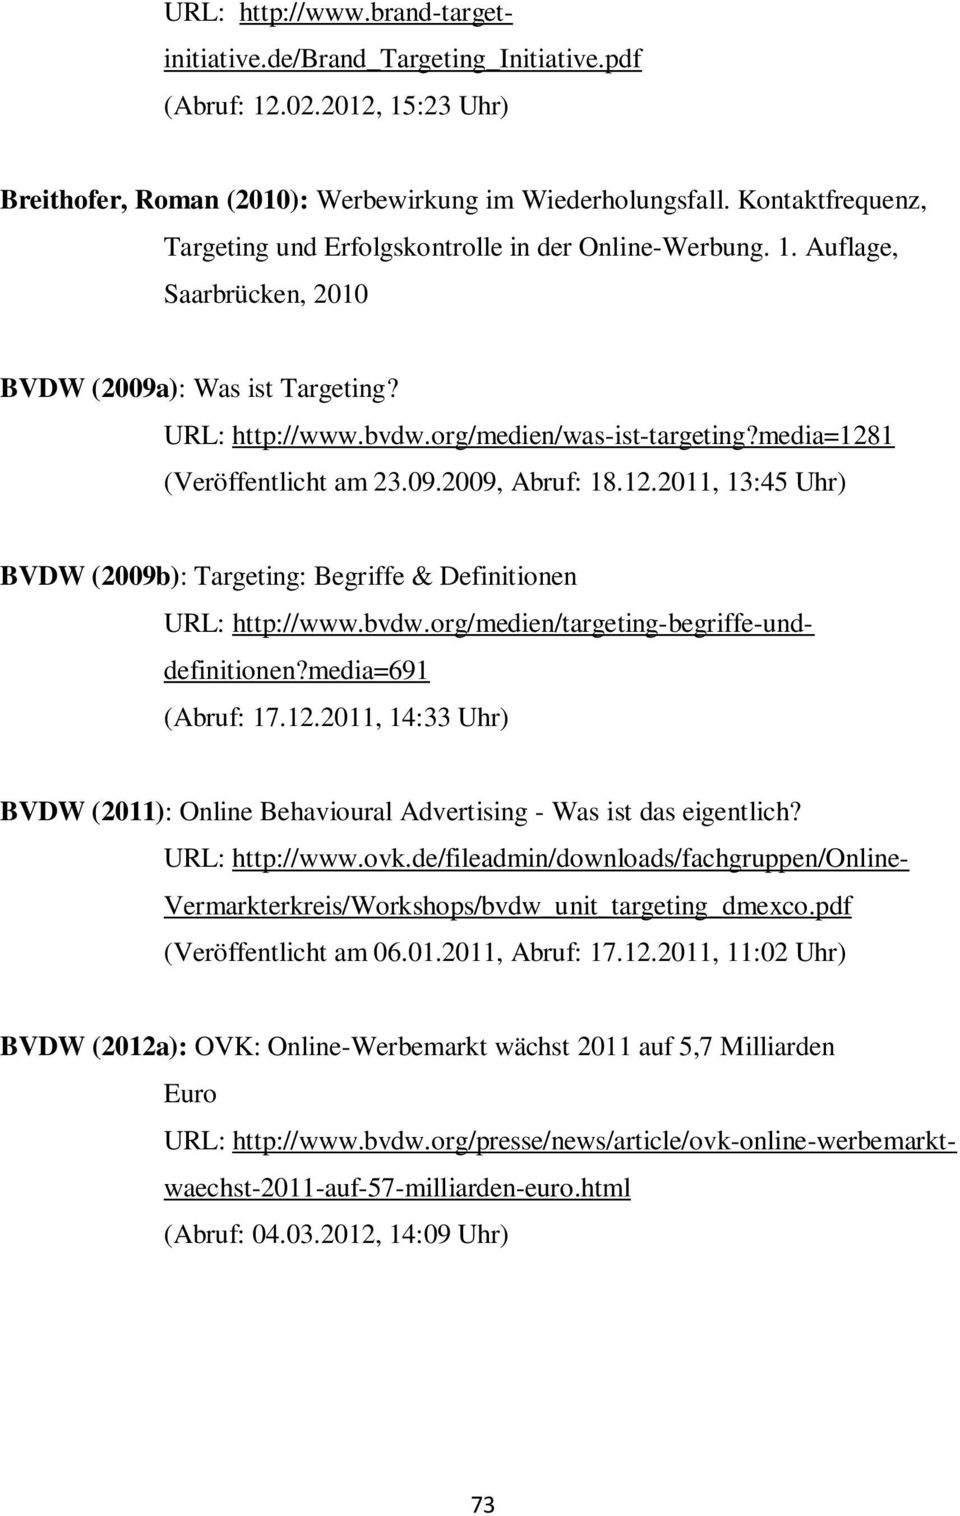 media=1281 (Veröffentlicht am 23.09.2009, Abruf: 18.12.2011, 13:45 Uhr) BVDW (2009b): Targeting: Begriffe & Definitionen URL: http://www.bvdw.org/medien/targeting-begriffe-unddefinitionen?